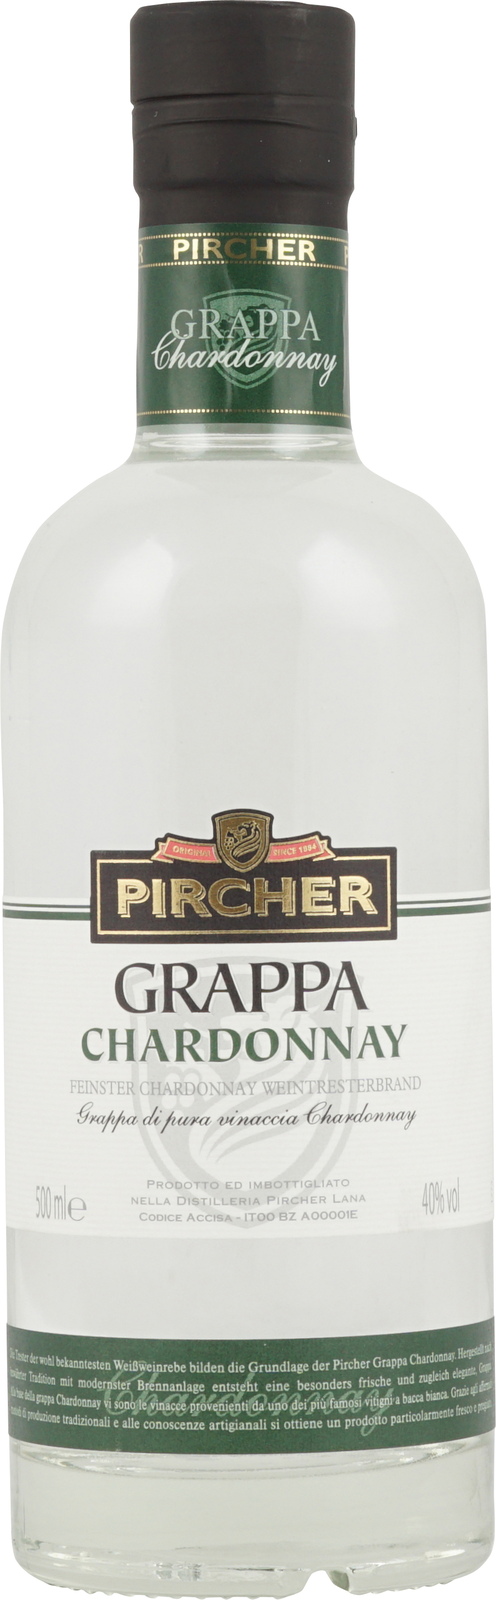 500 Vol Chardonnay Grappa in 40% Flasche ml mit Pircher